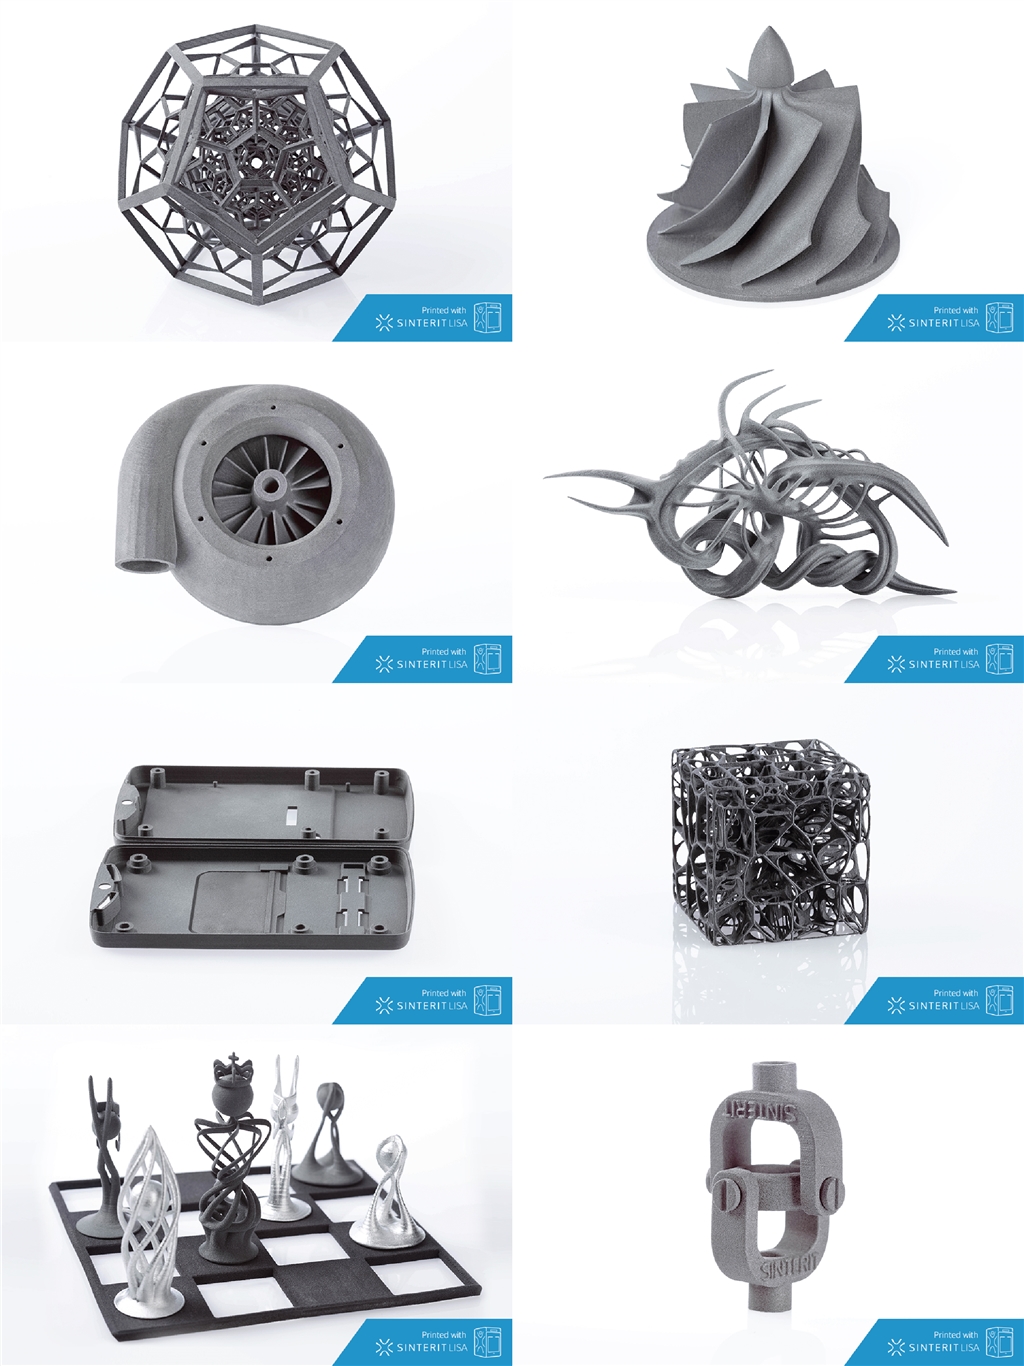 Sinterit Lisa PRO SLS 3D printer samples